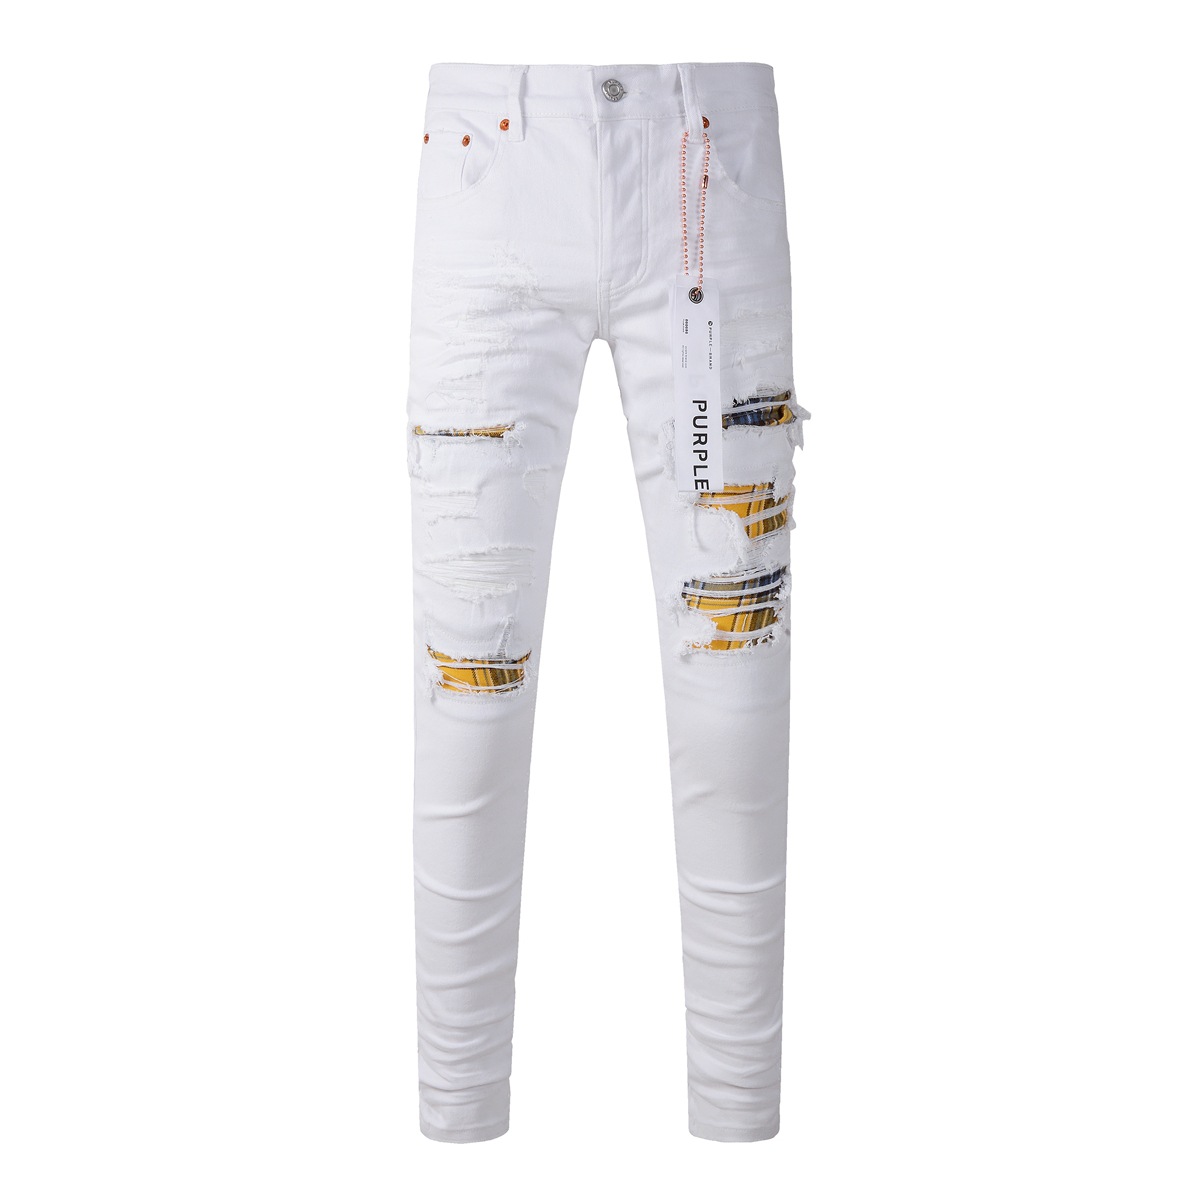 Lila Markenjeans für Herren, High Street, weiße Hosen, modische Denim-Hosen mit geflickten Löchern, Trend-Jeans